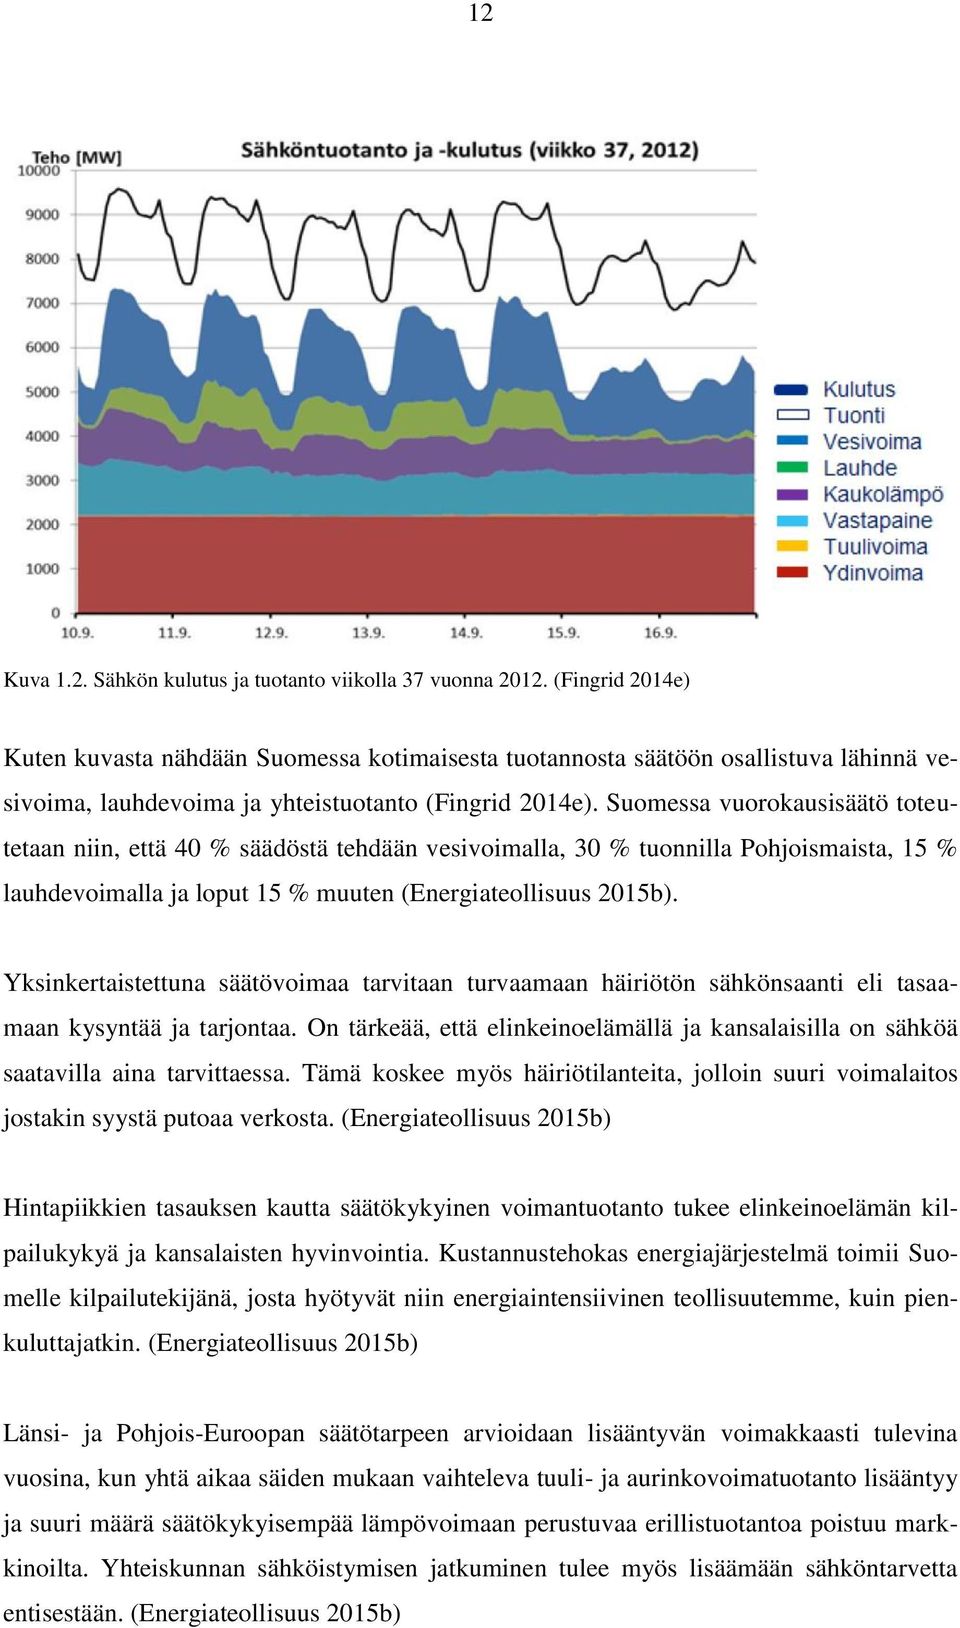 Suomessa vuorokausisäätö toteutetaan niin, että 40 % säädöstä tehdään vesivoimalla, 30 % tuonnilla Pohjoismaista, 15 % lauhdevoimalla ja loput 15 % muuten (Energiateollisuus 2015b).